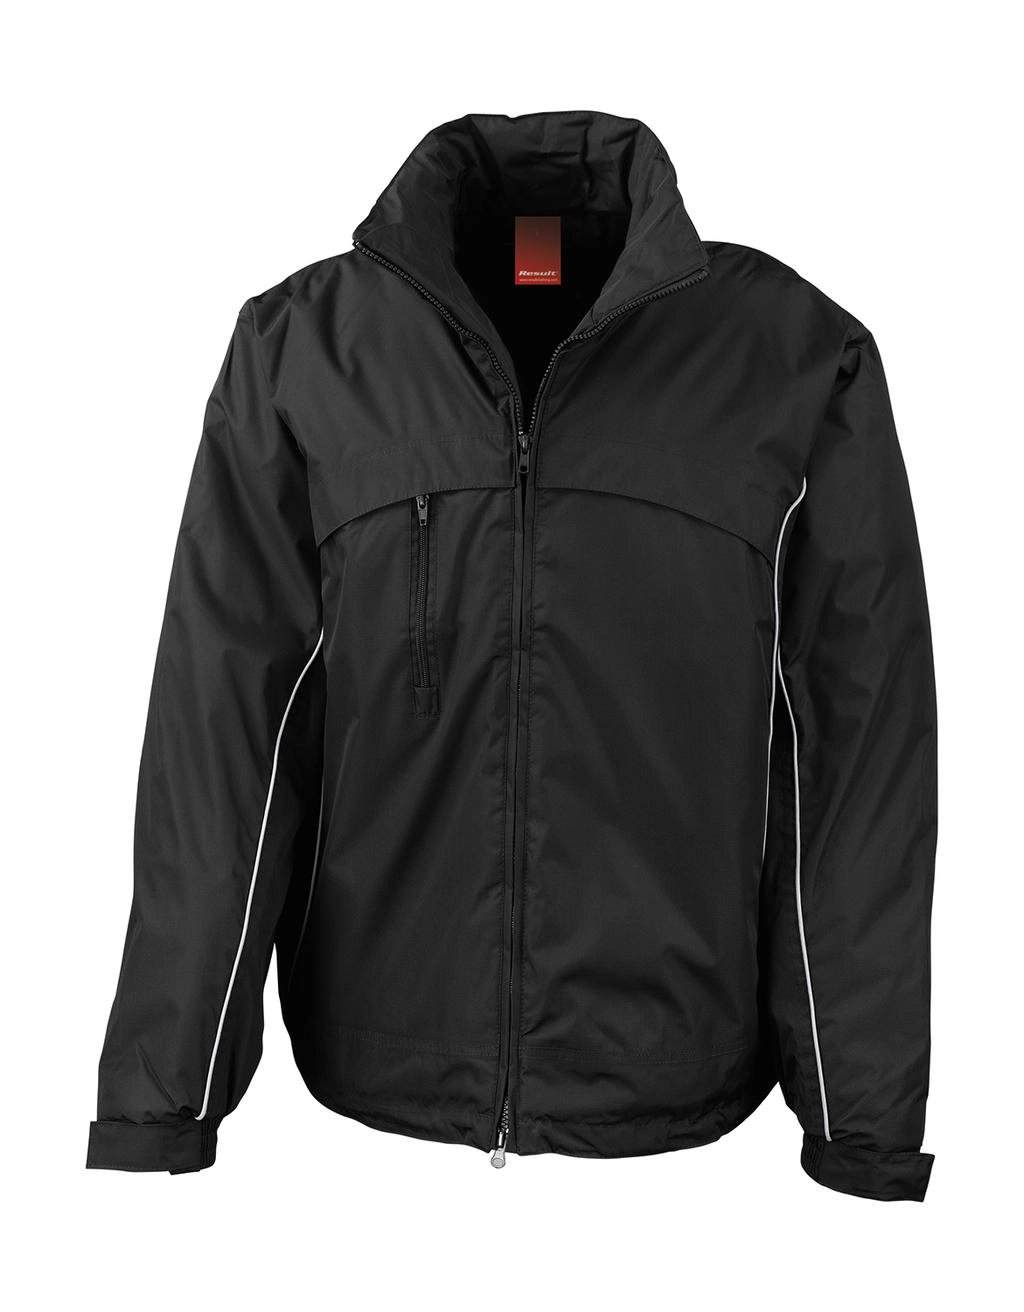 Waterproof Crew Jacket zum Besticken und Bedrucken in der Farbe Black mit Ihren Logo, Schriftzug oder Motiv.